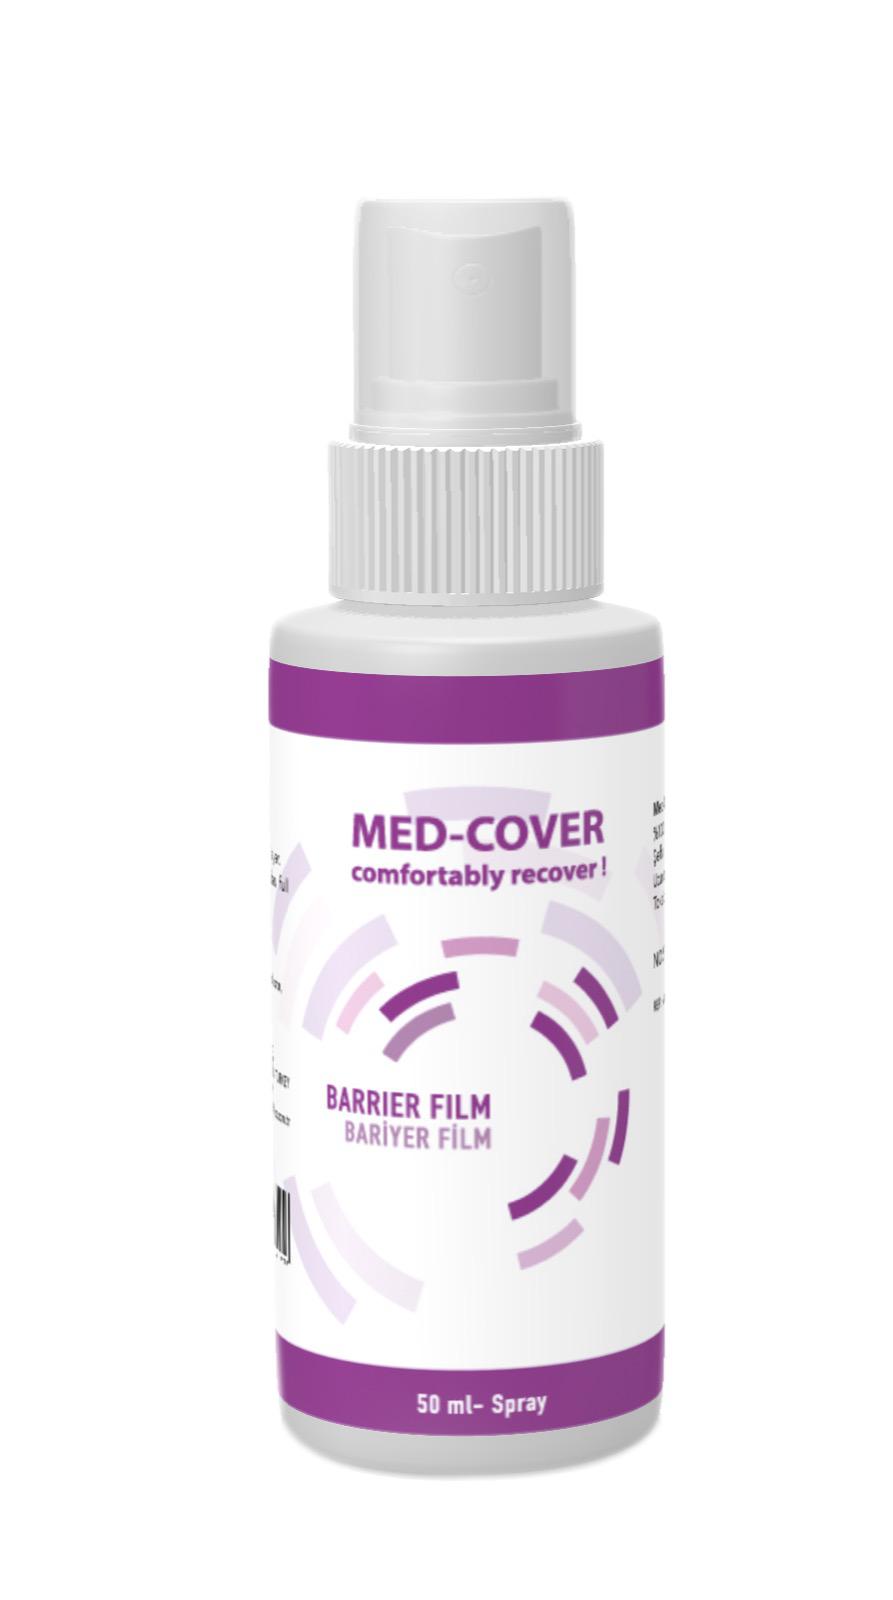 MED-COVER Barrier Film Spray